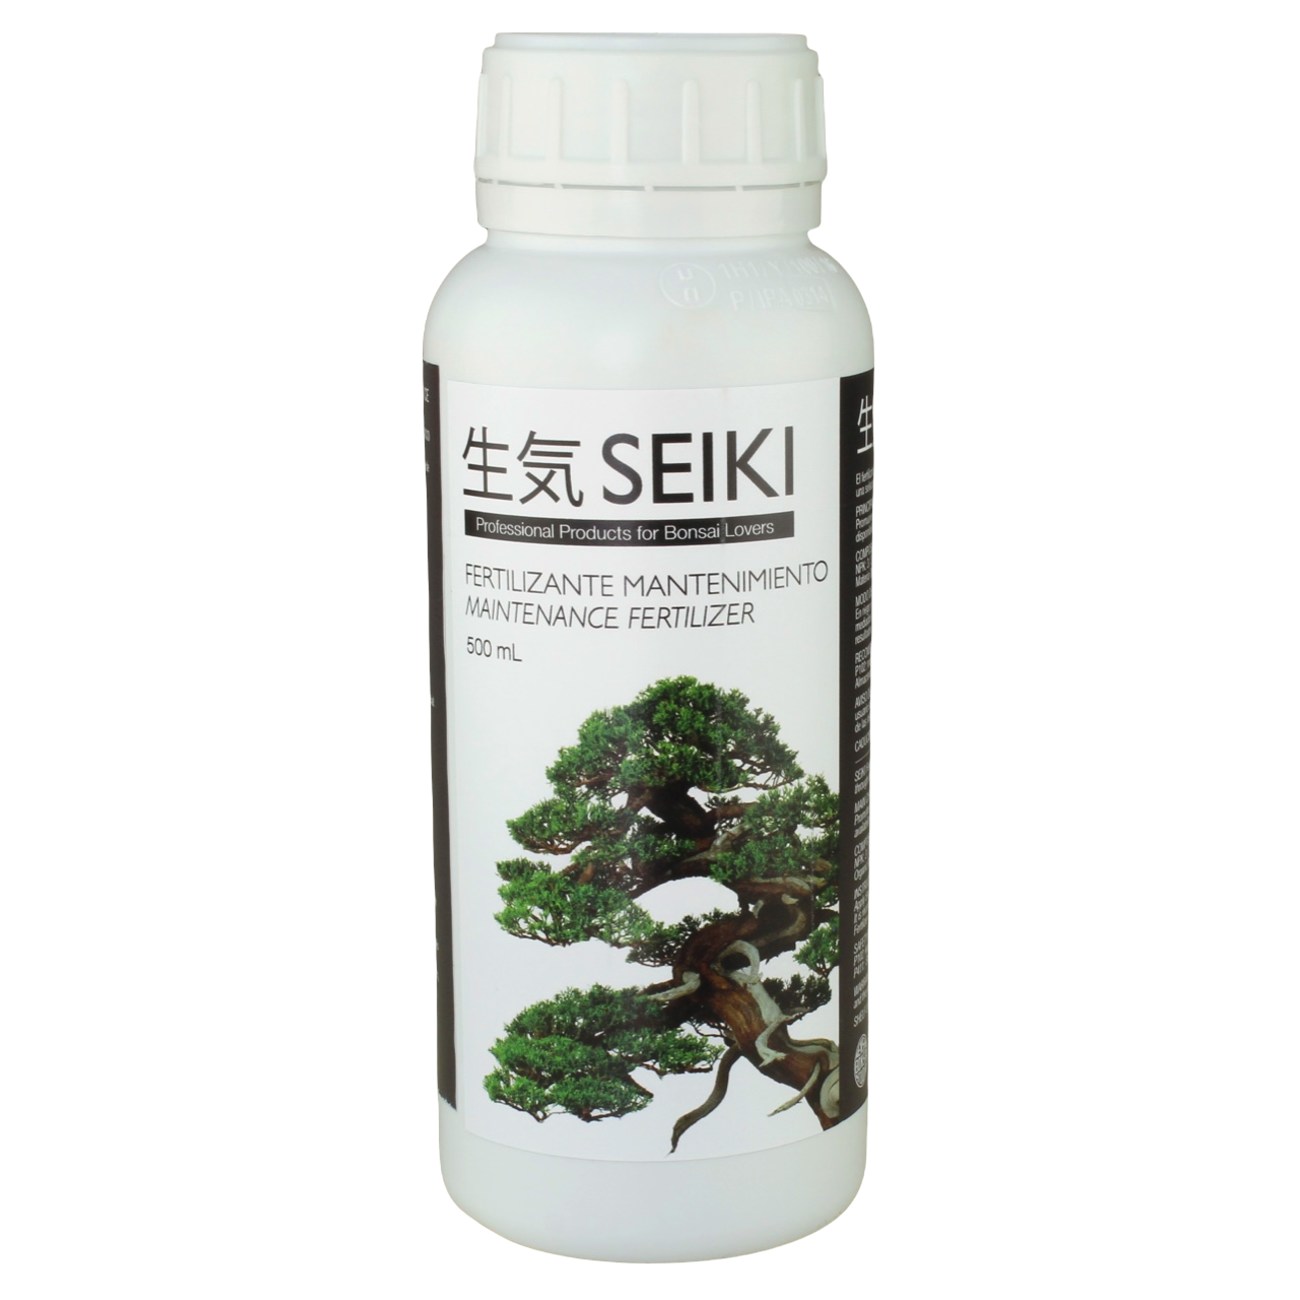 Abono mantenimiento Seiki 500 ml